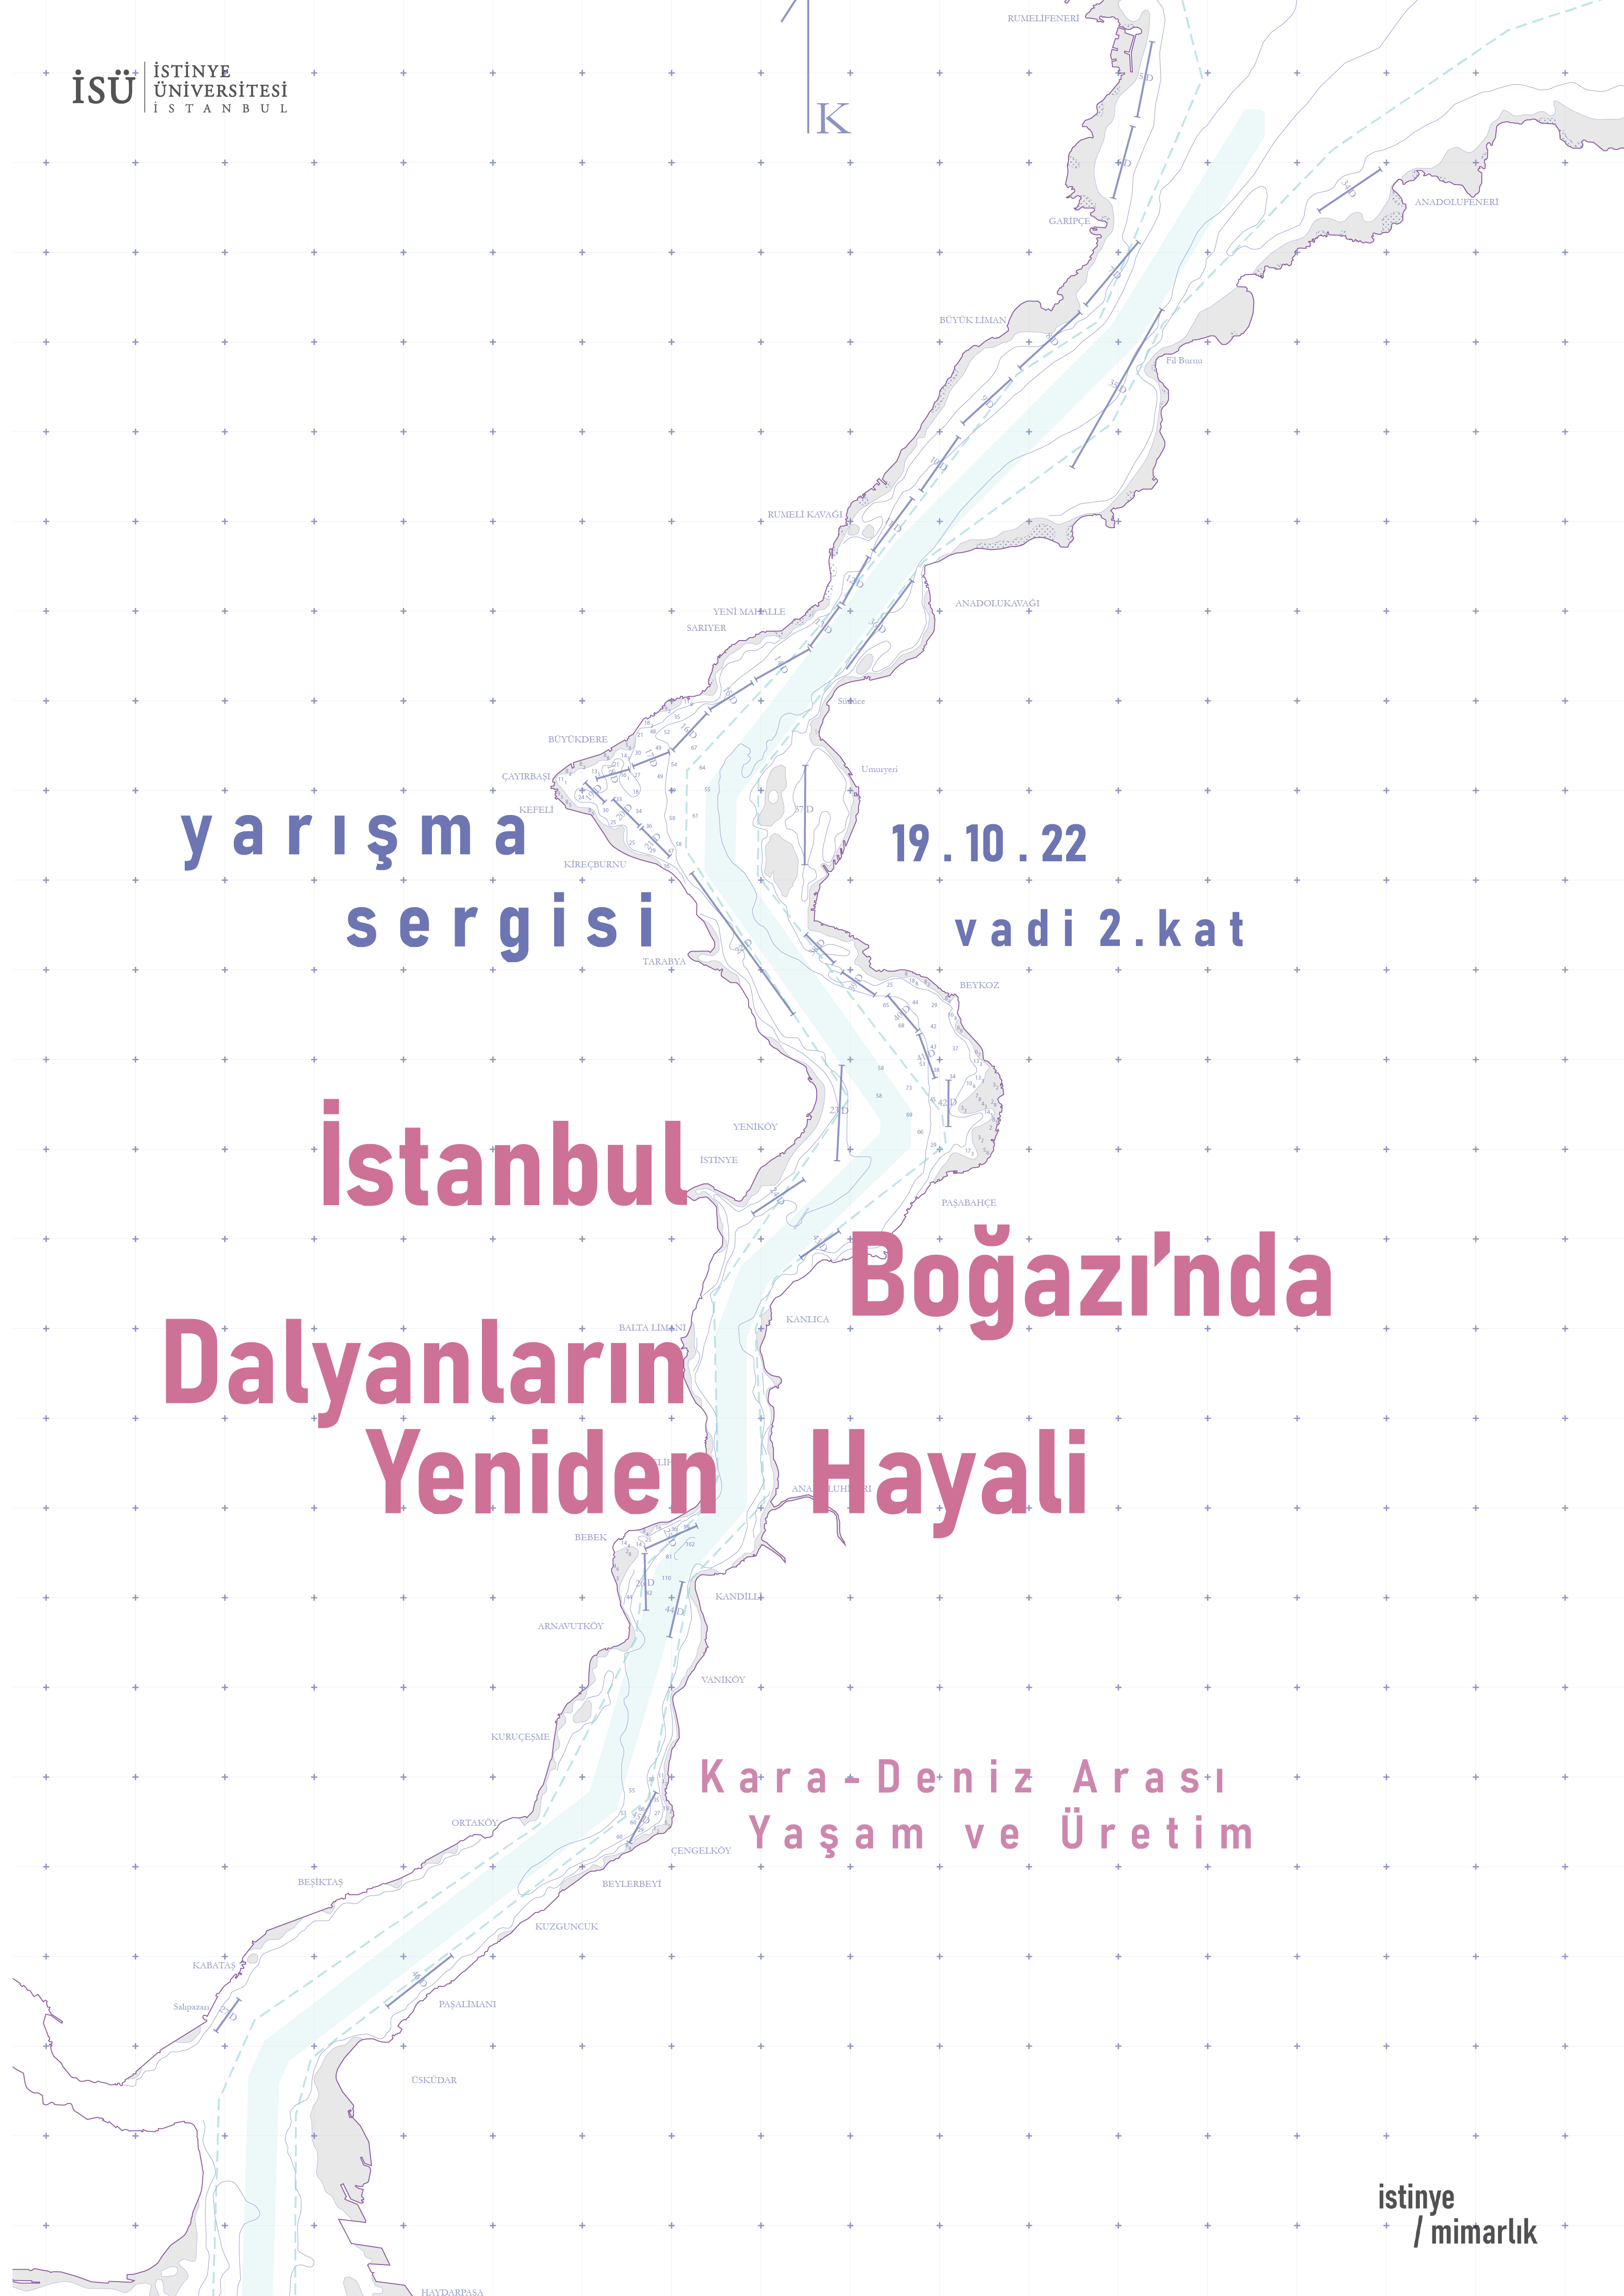 İstanbul Boğazı’nda Dalyanların Yeniden Hayali Yarışması Kolokyum ve Sergi Açılışı